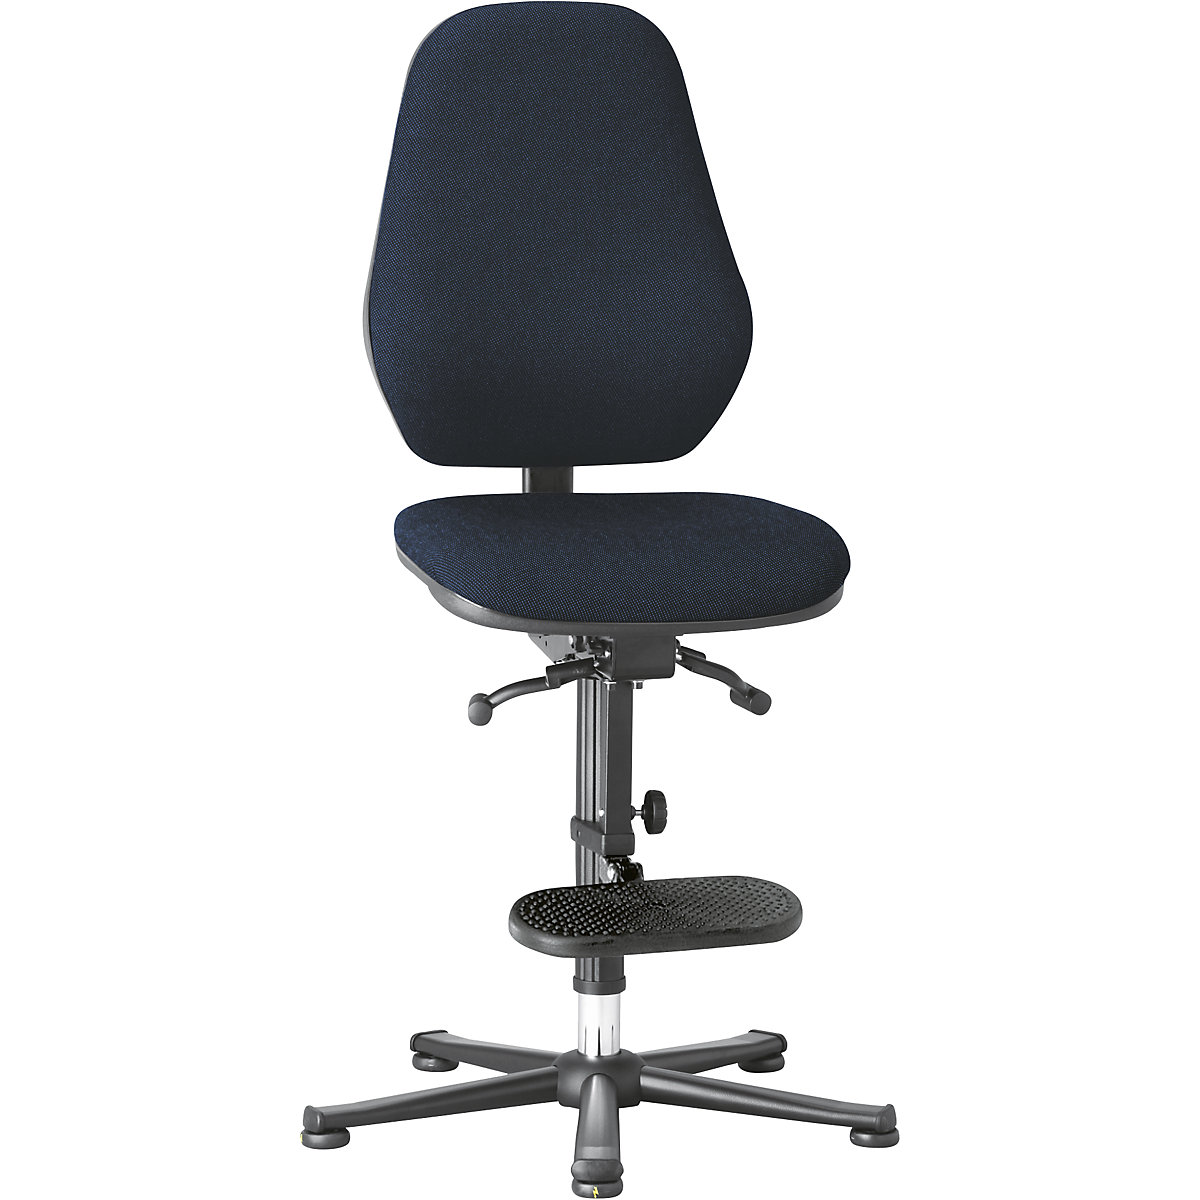 Pracovní otočná židle – bimos, s ochranou ESD, se synchronní mechanikou a regulací hmotnosti, patky, pomůcka pro výstup, modrý látkový potah-7